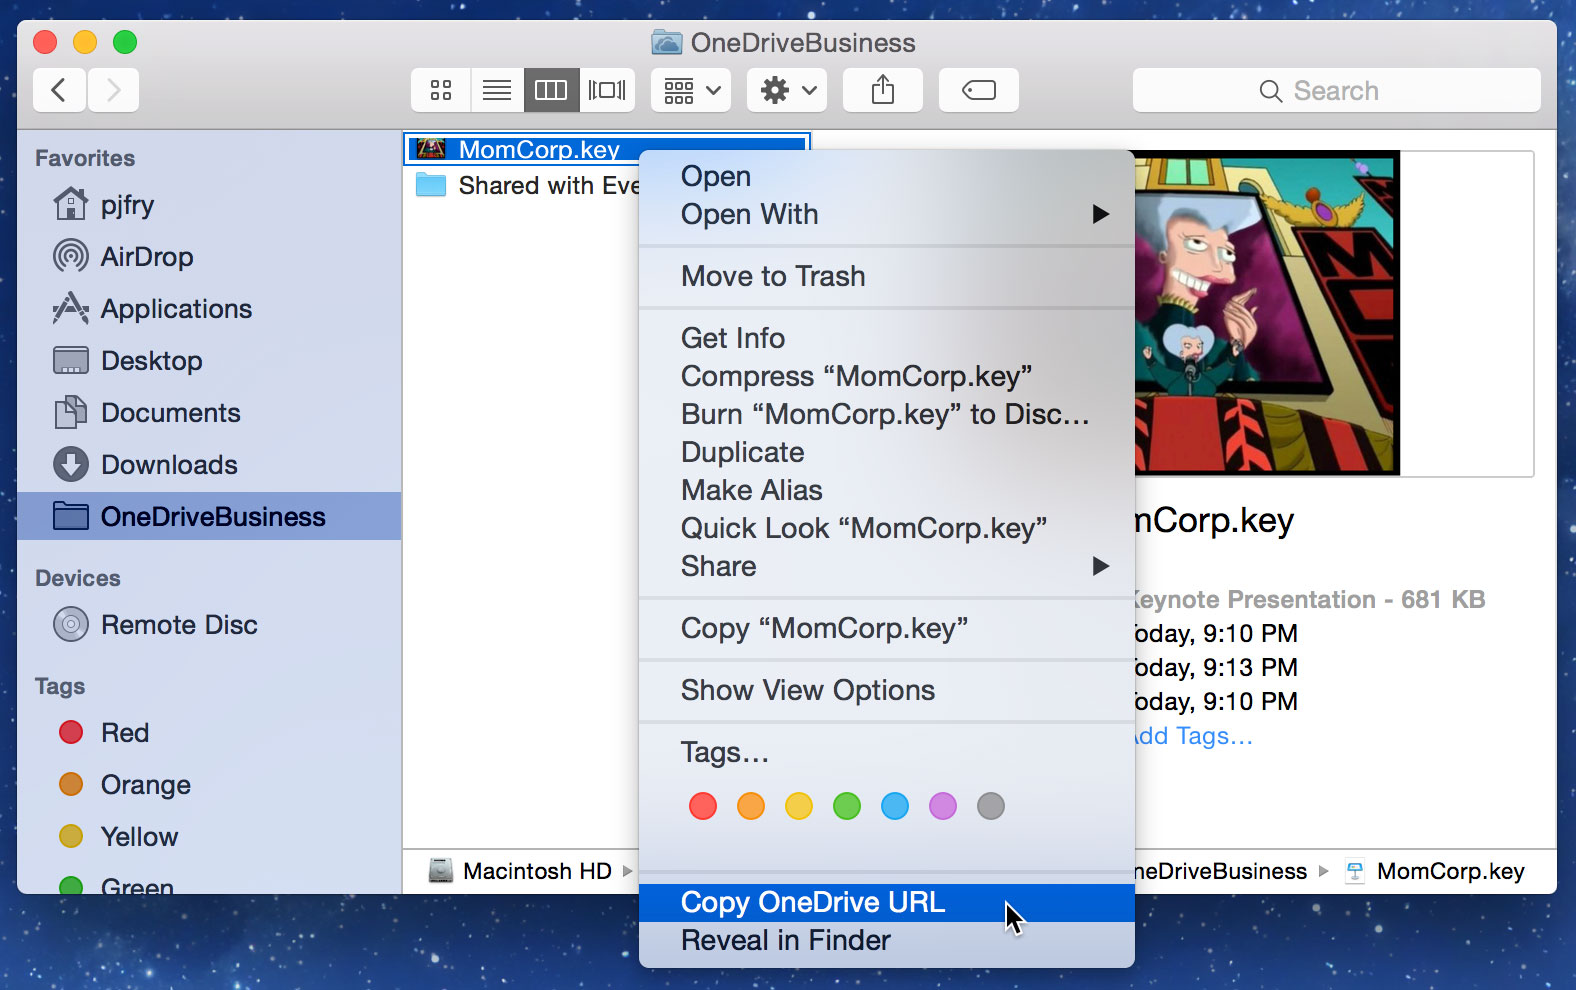 screenshot of 'Copy OneDrive URL' in Finder context menu